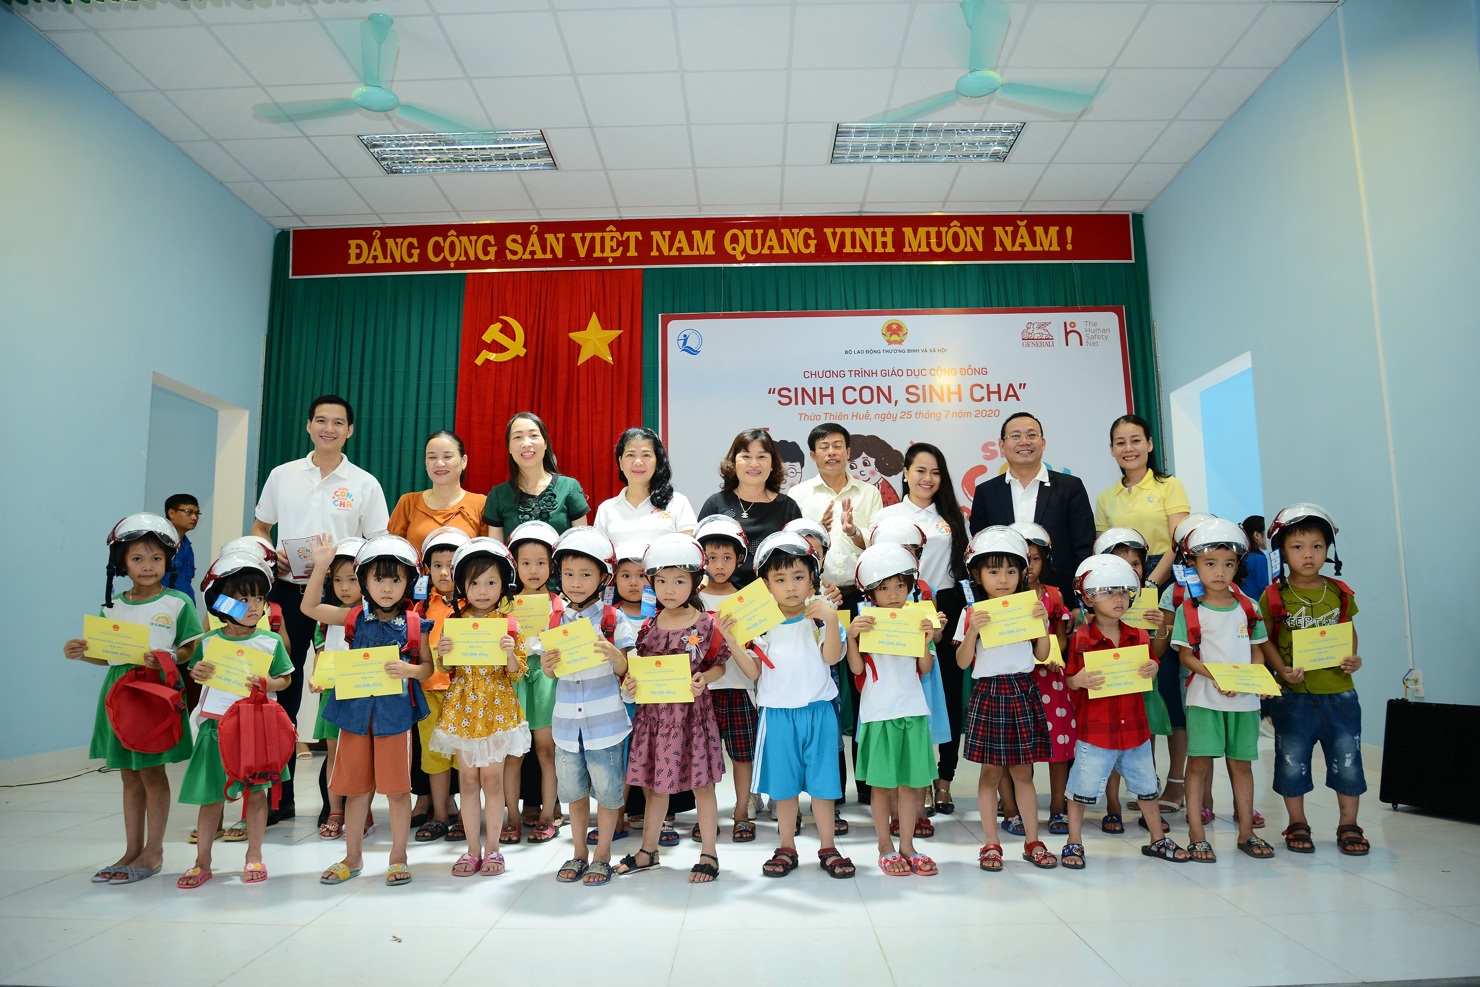 Generali Việt Nam triển khai Chương trình “Sinh Con, Sinh Cha” lần đầu tiên tại miền Trung.